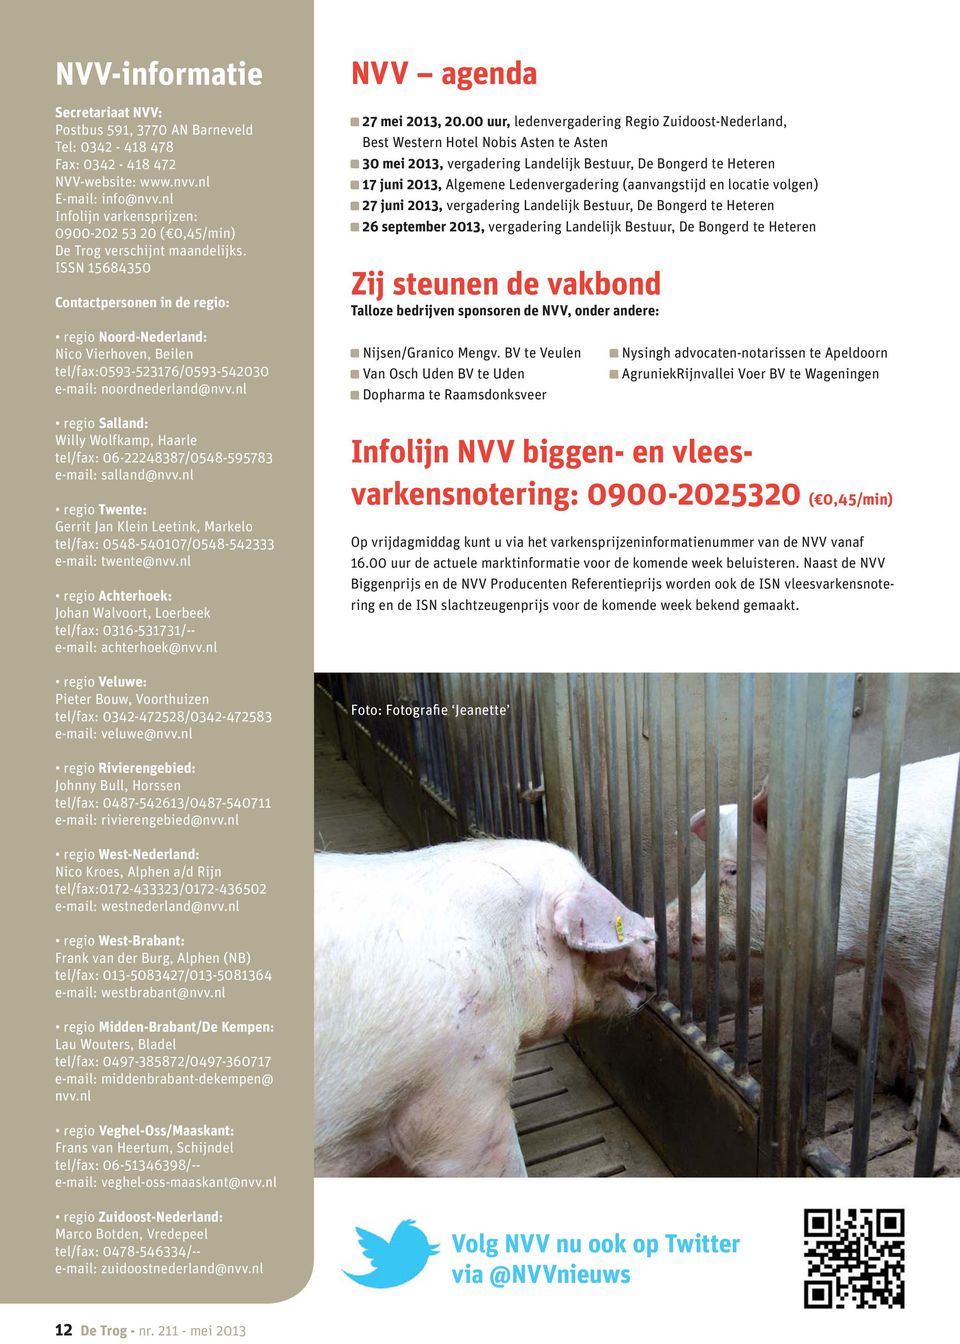 ISSN 15684350 Contactpersonen in de regio: regio Noord-Nederland: Nico Vierhoven, Beilen tel/fax:0593-523176/0593-542030 e-mail: noordnederland@nvv.